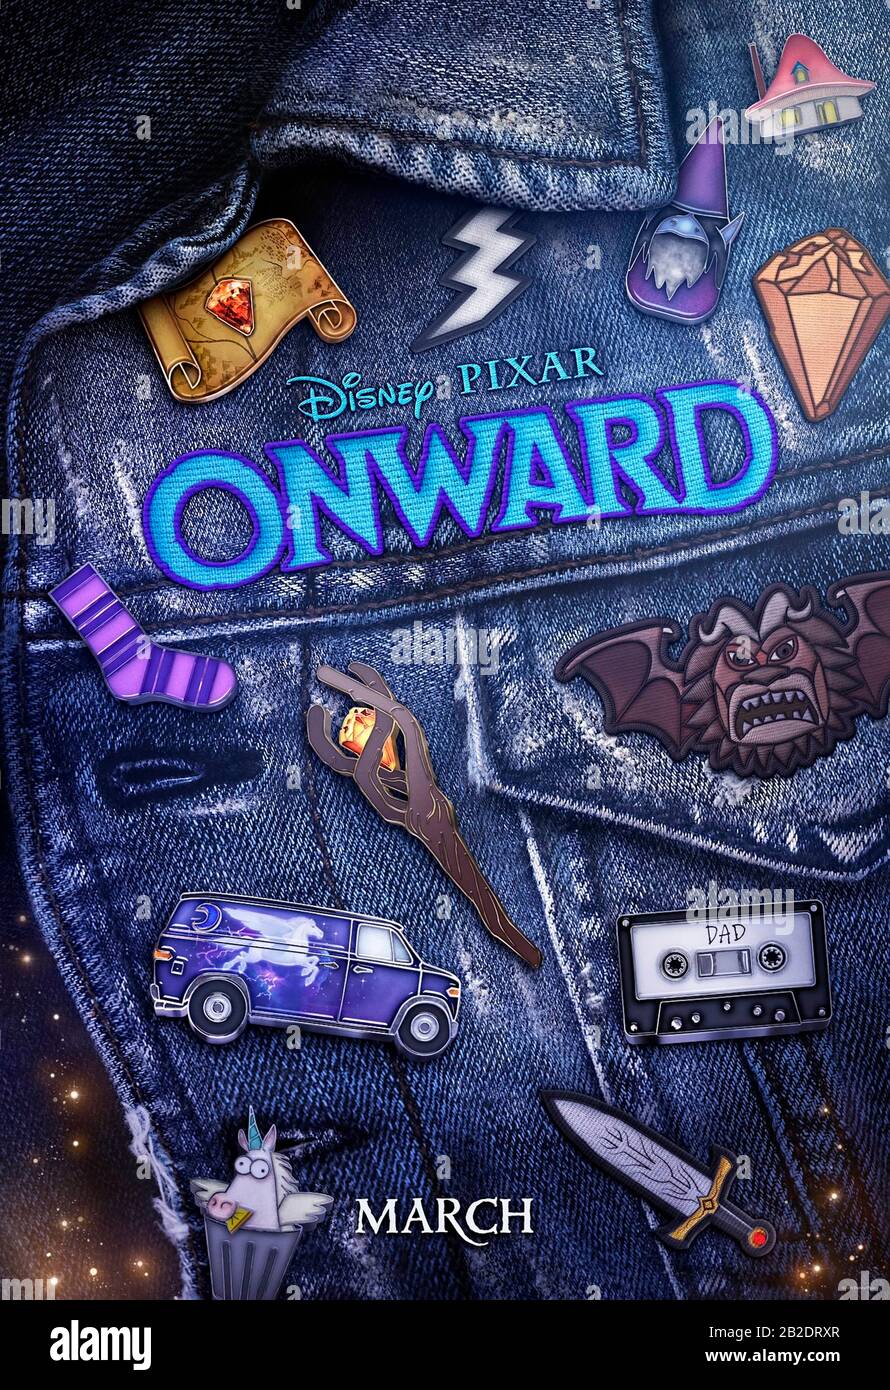 Onward (2020) réalisé par Dan Scanlon et avec Tom Holland, Chris Pratt, Octavia Spencer et Julia Louis-Dreyfus. Aventure fantastique sur deux frères elf essayant de trouver de la magie dans la banlieue. Banque D'Images